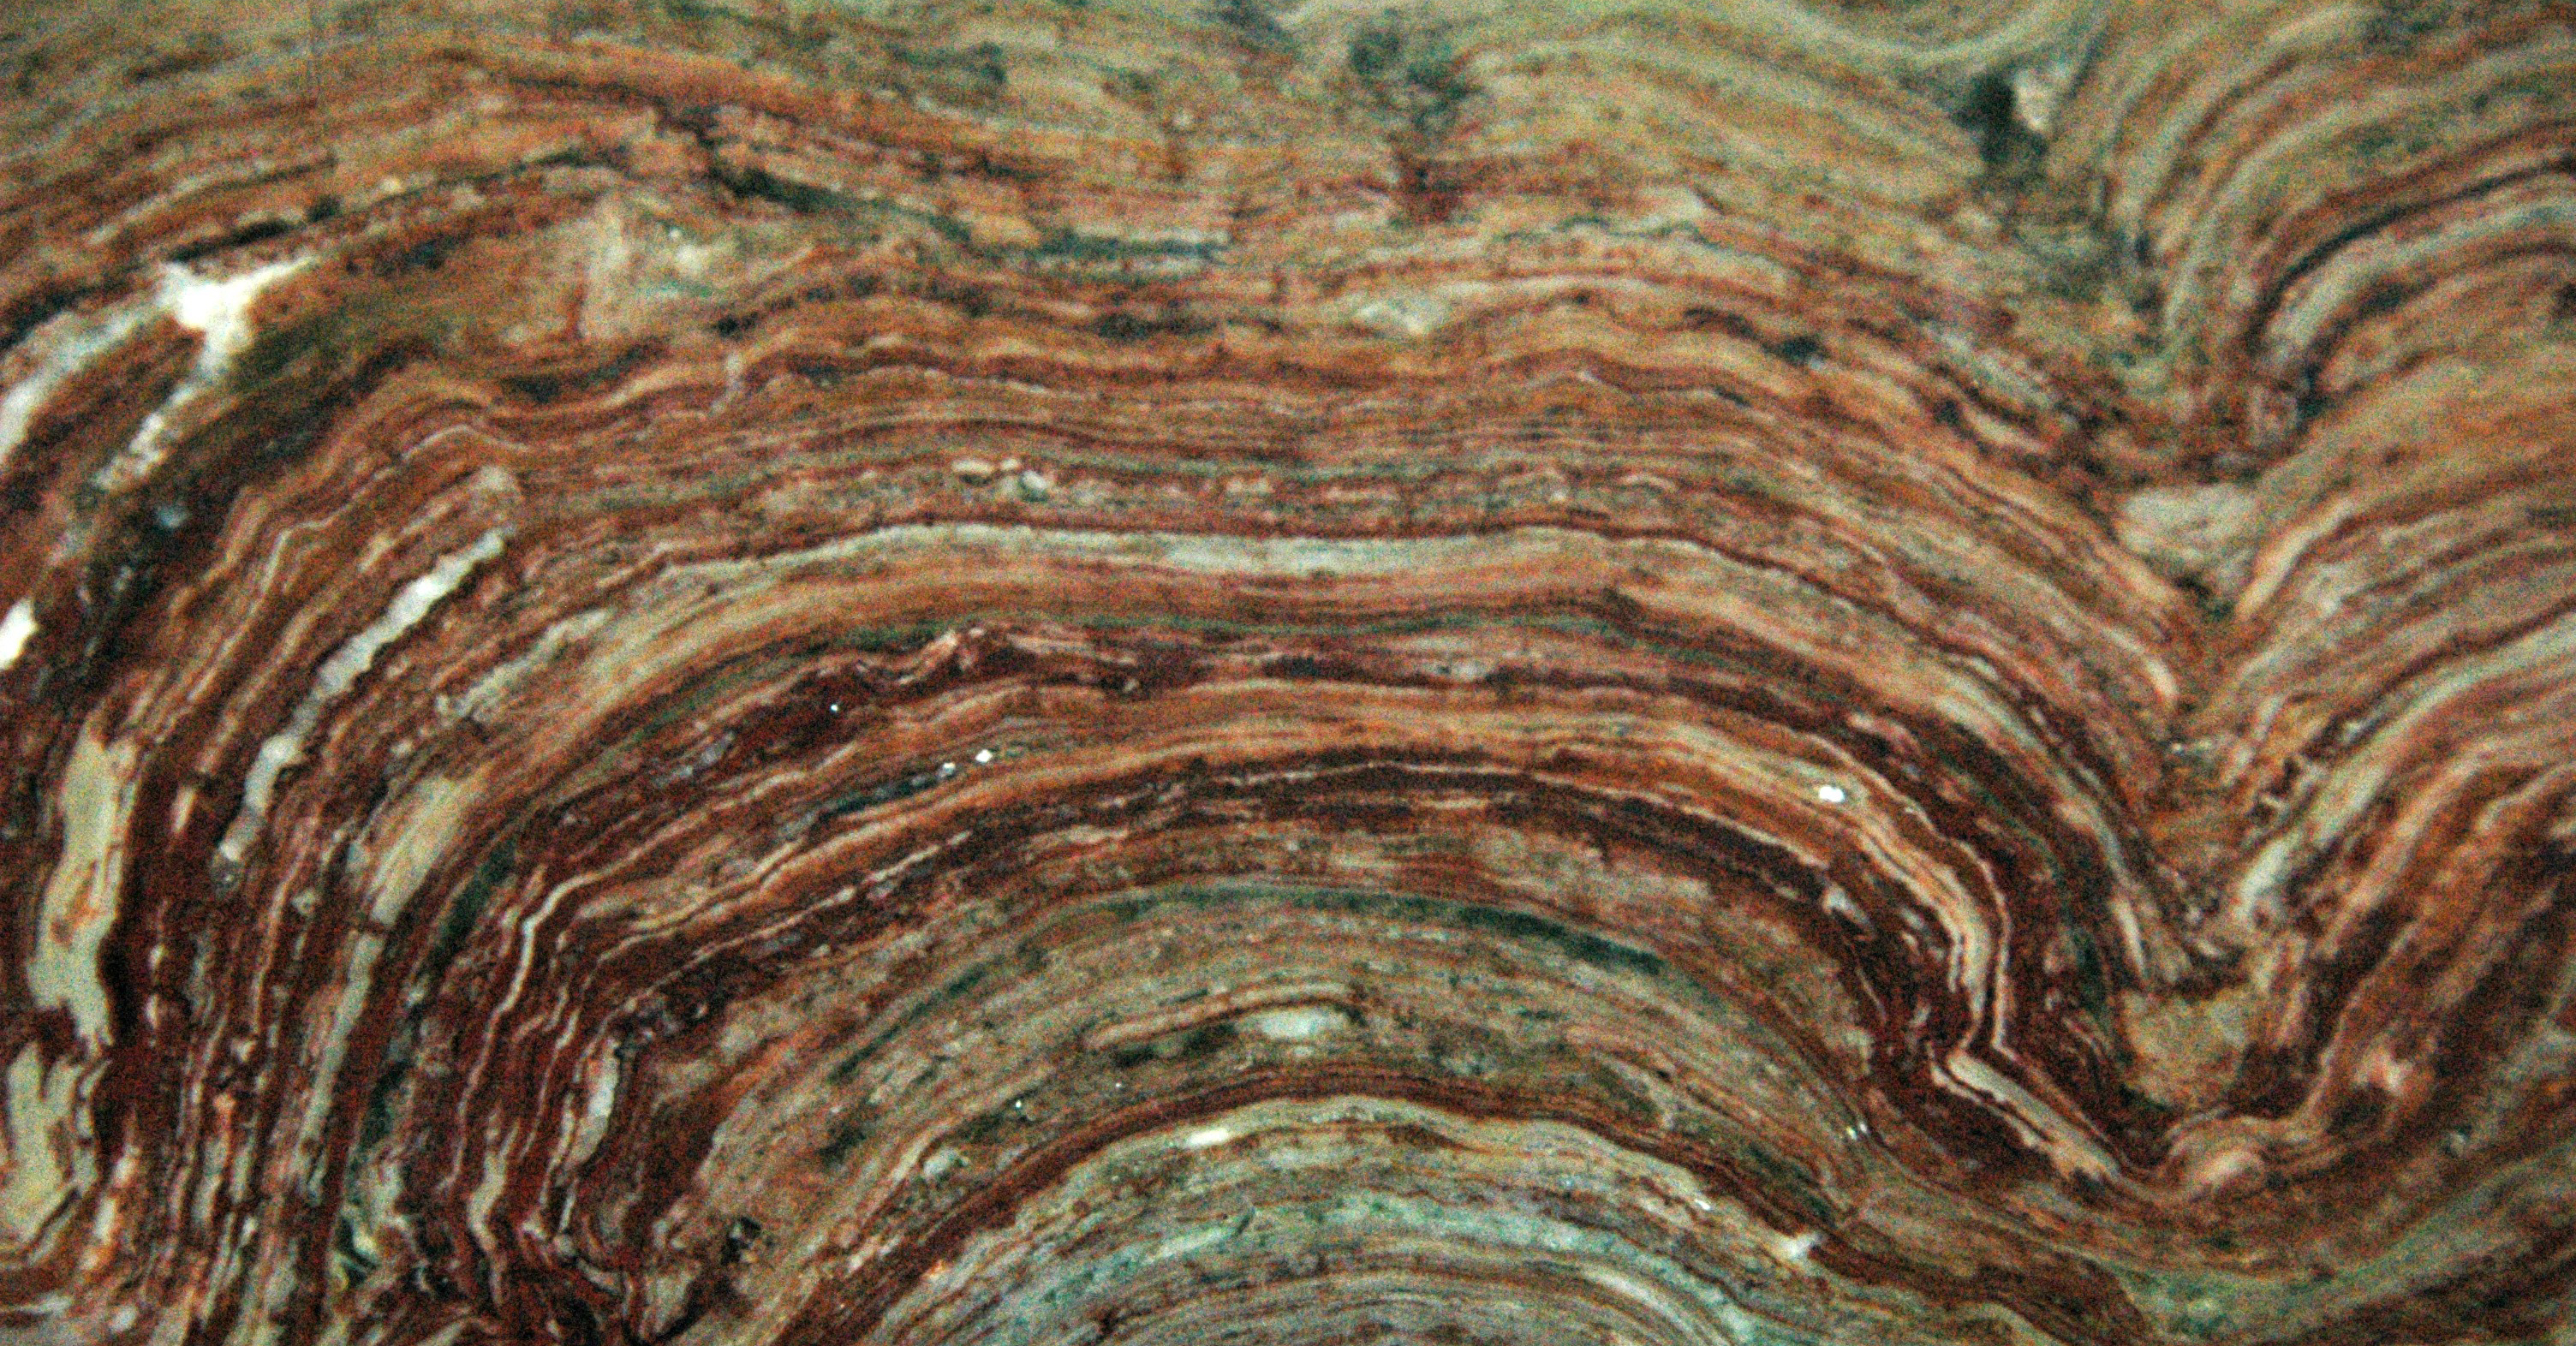 stromatolite-fossil-james-st-john-flickr-ccc2.jpg